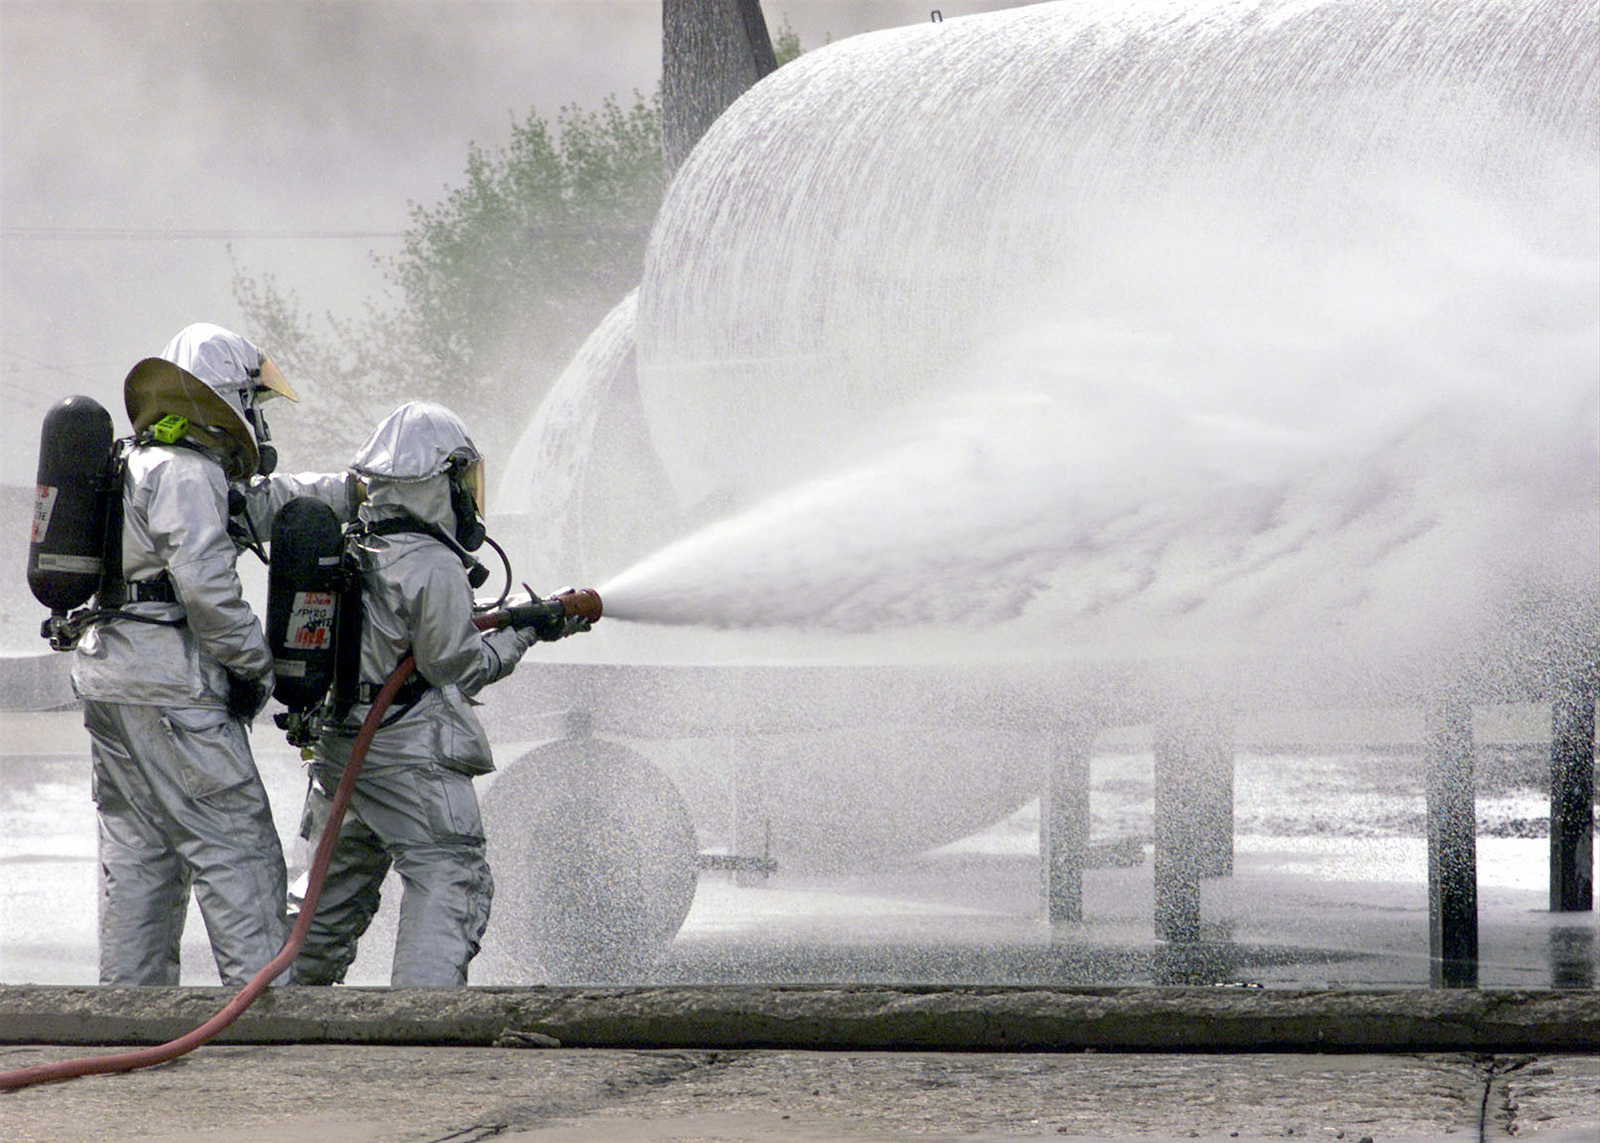 Fire fighters in protective gear spray foam